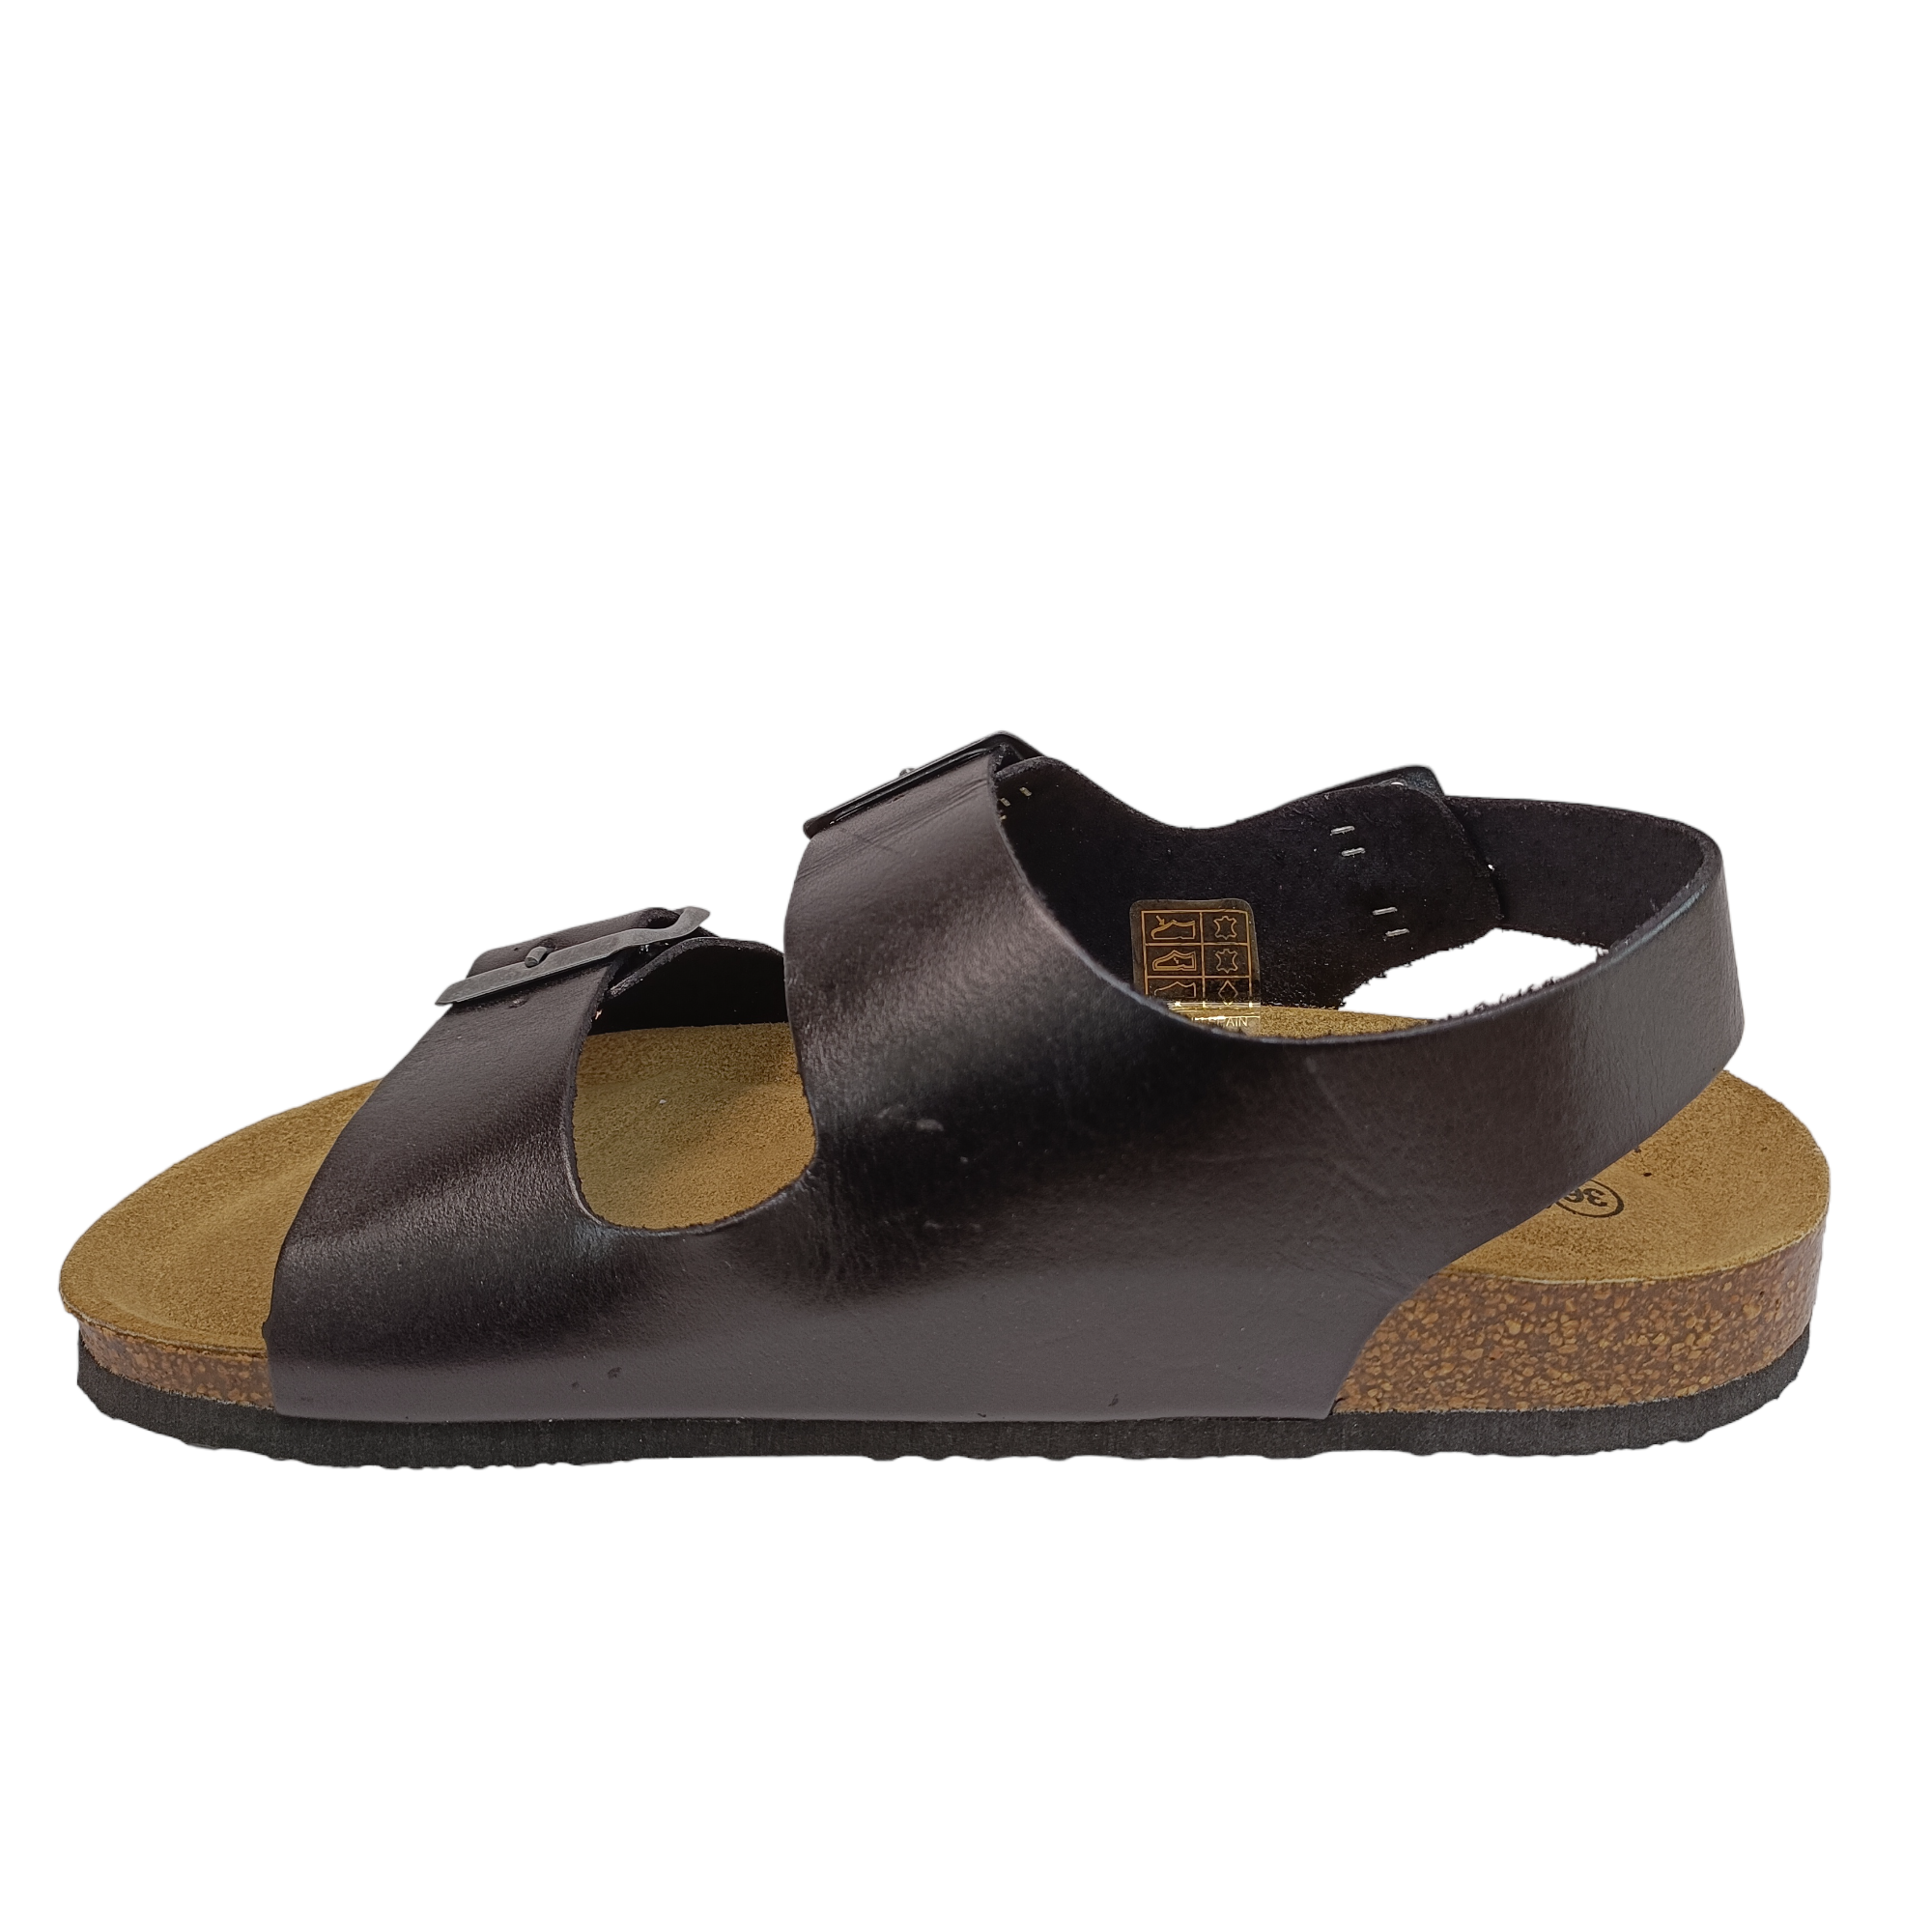 Pretzel - shoe&amp;me - Plakton - Sandal - Sandals, Summer, Womens